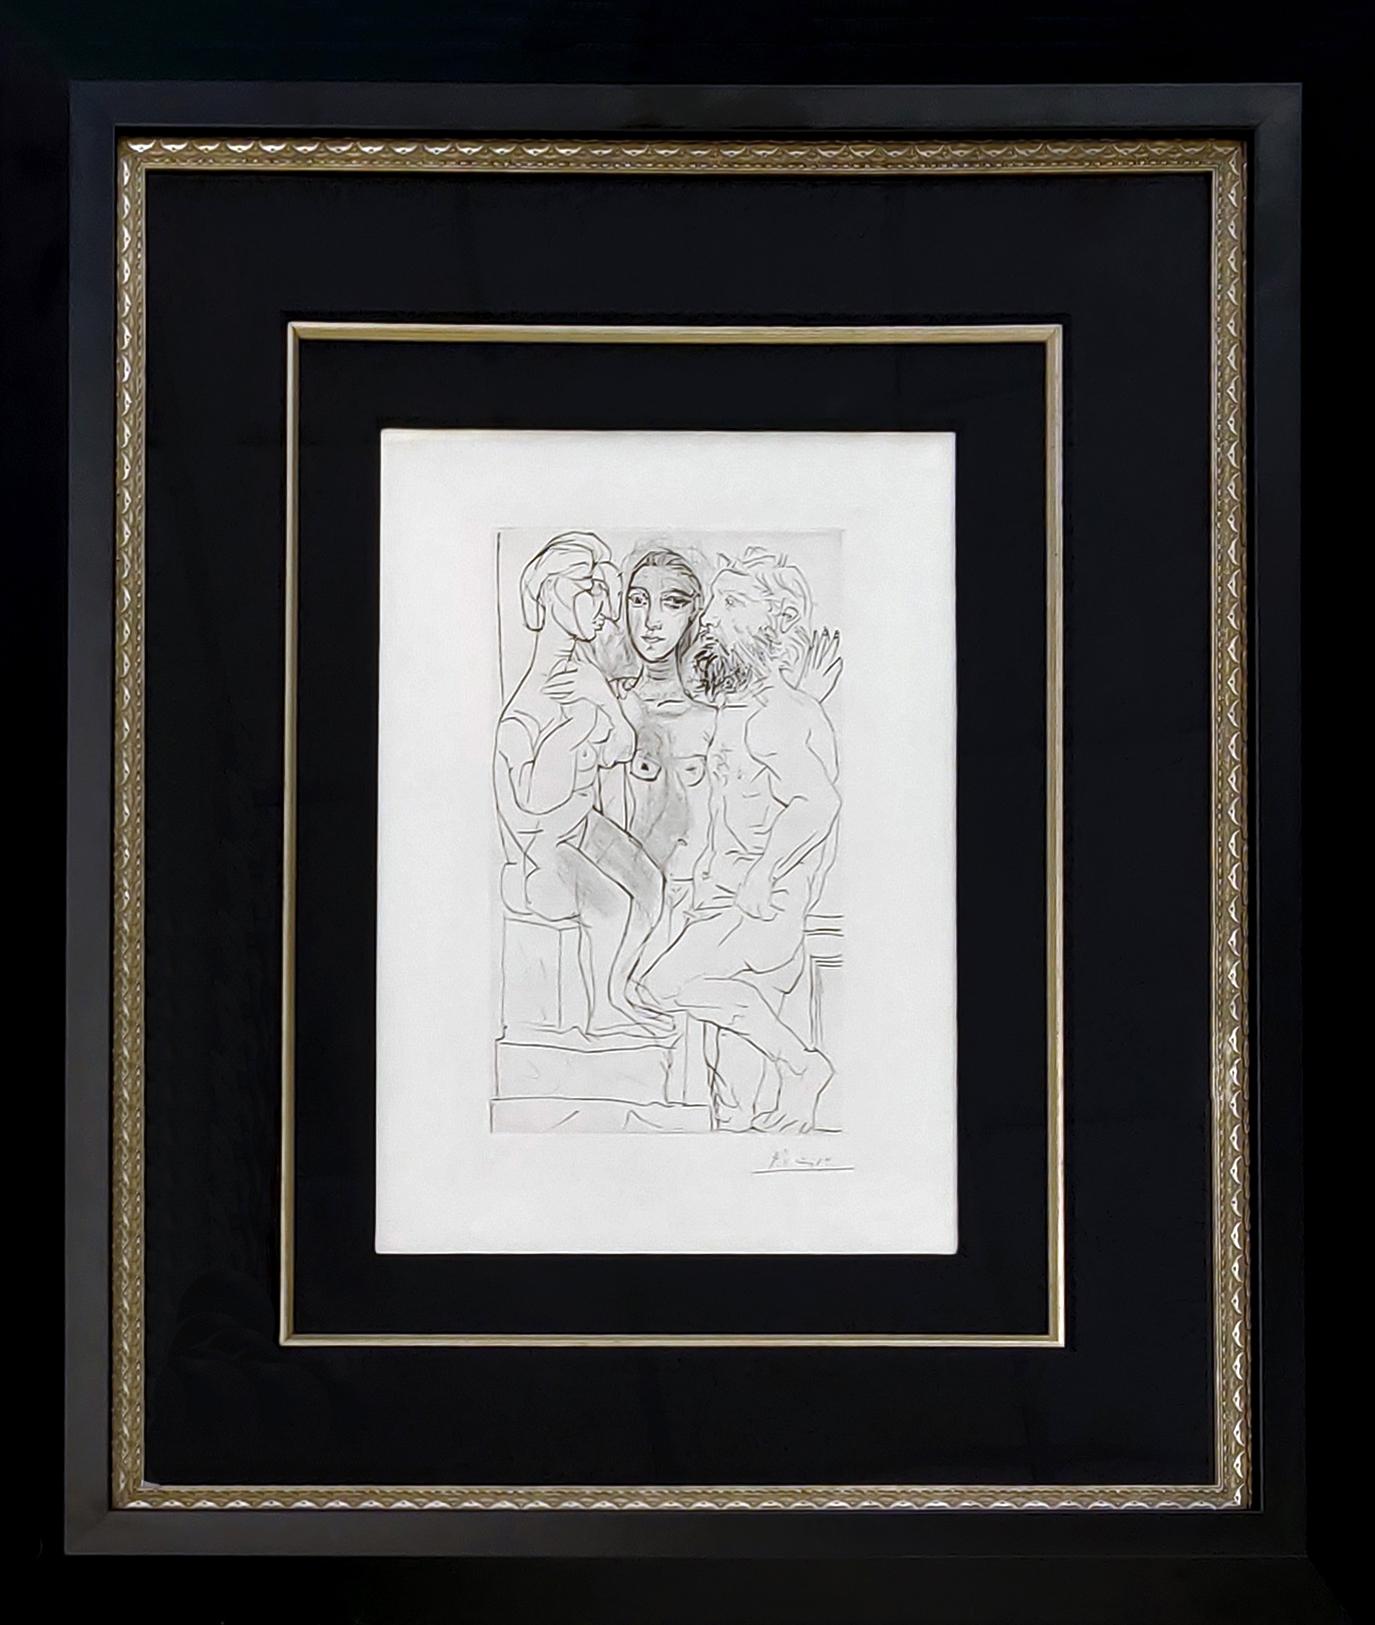 SCULPTEUR, MODELE, ET SCULPTURE ASSISE (BLOCH 146) - Print by Pablo Picasso